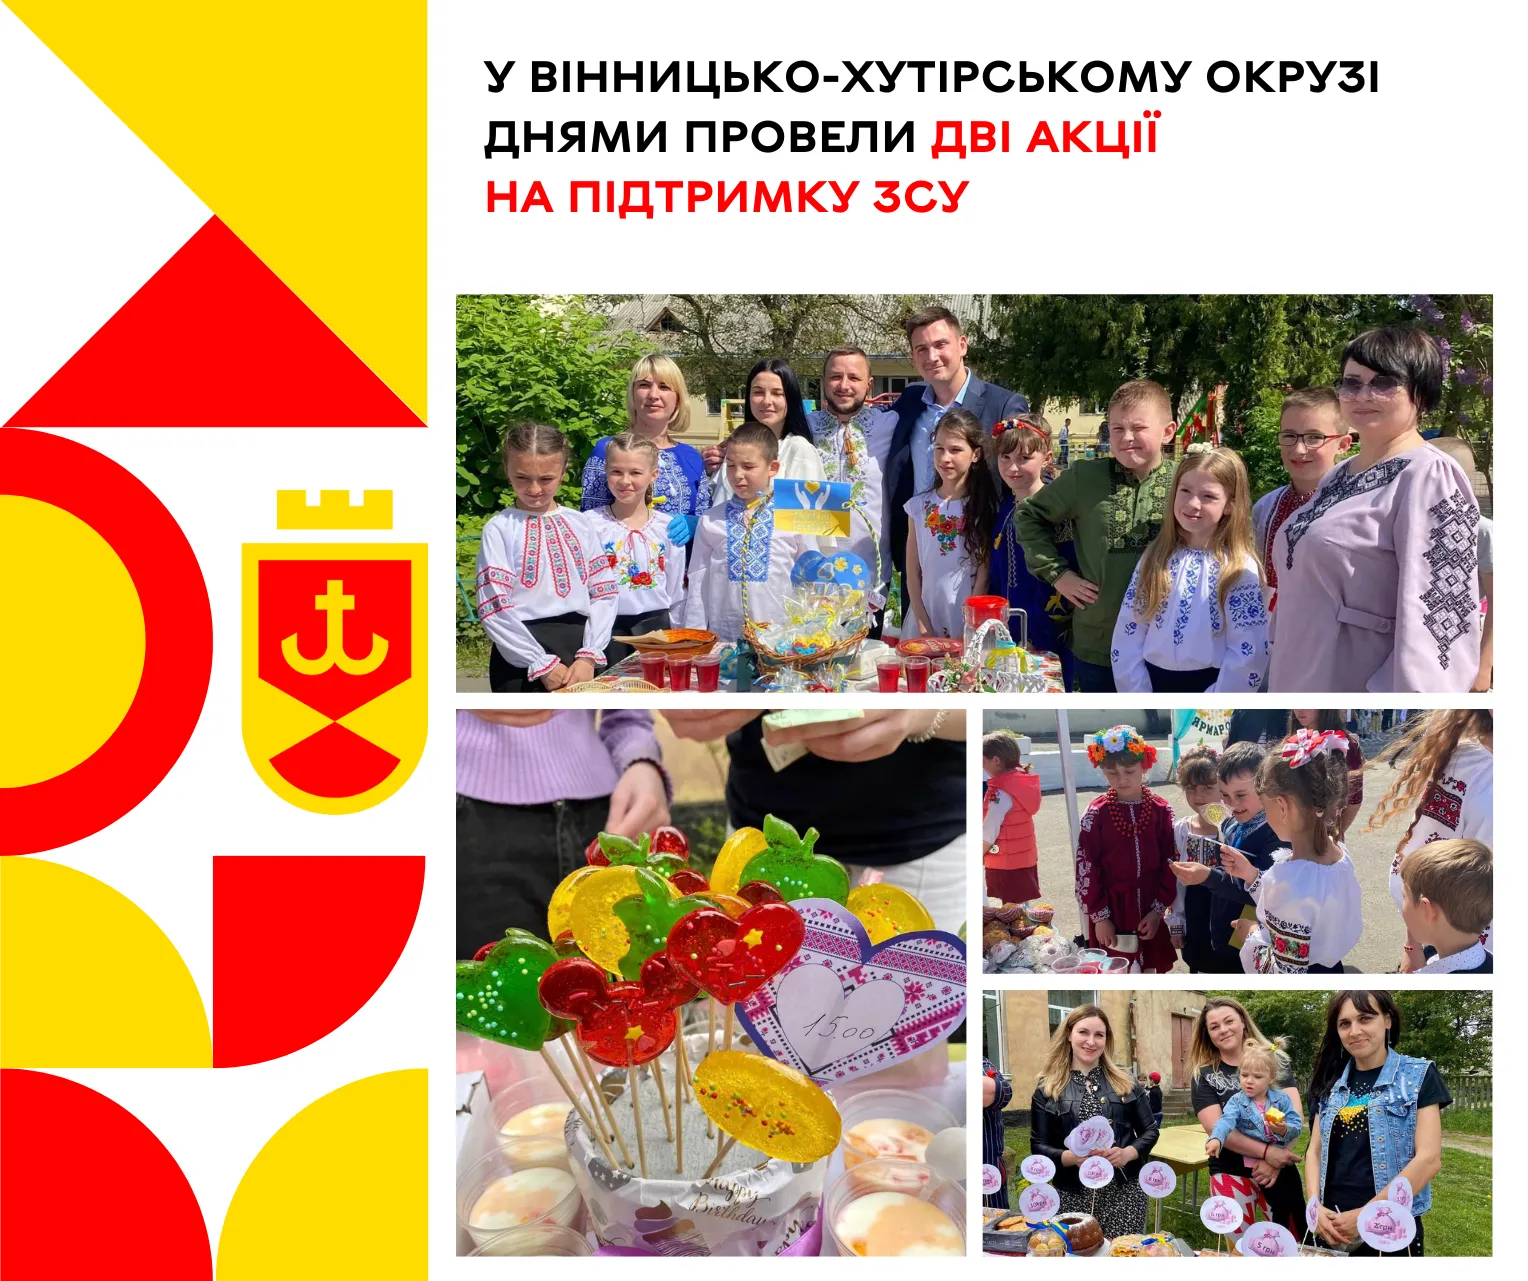 Навчальні заклади Вінницько-Хутірського округу провели два ярмарки на підтримку ЗСУ